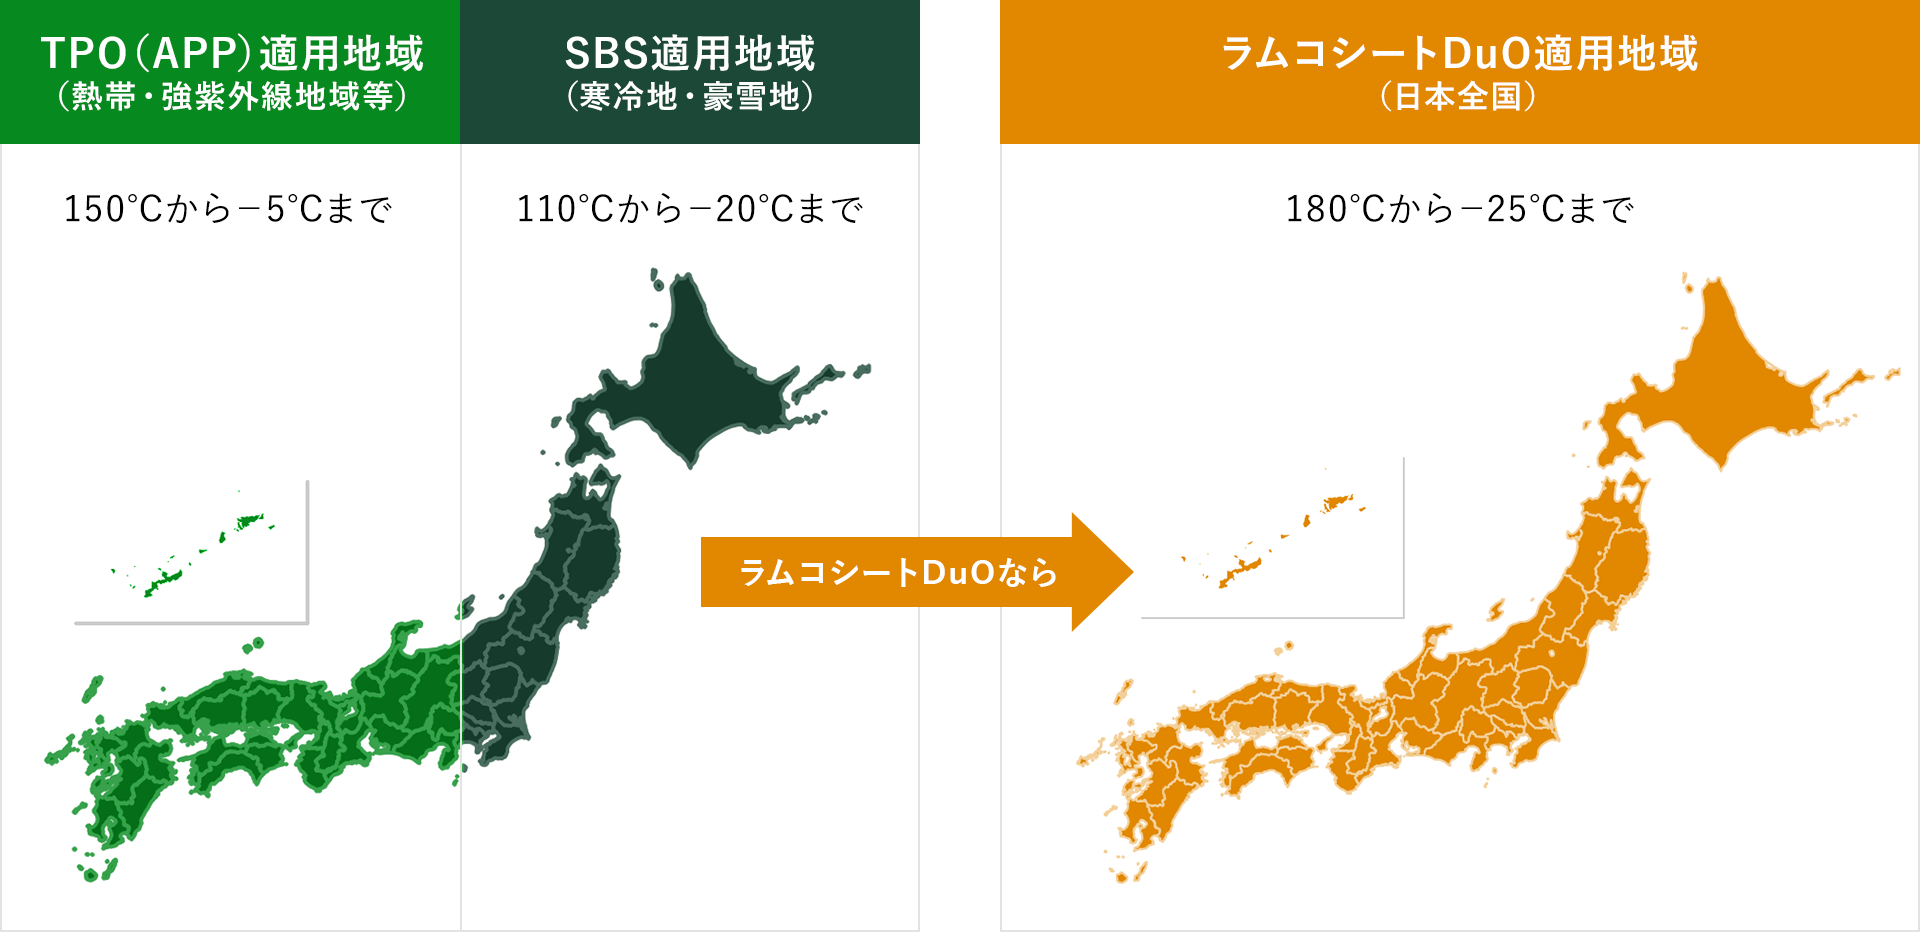 図：TPO（APP）適用地域（熱帯・強紫外線地域等 150℃から-5℃まで）・SBS適用地域（寒冷地・豪雪地 110℃から-20℃まで）とラムコシートDuO適用地域（日本全国 180℃から-25℃）の比較